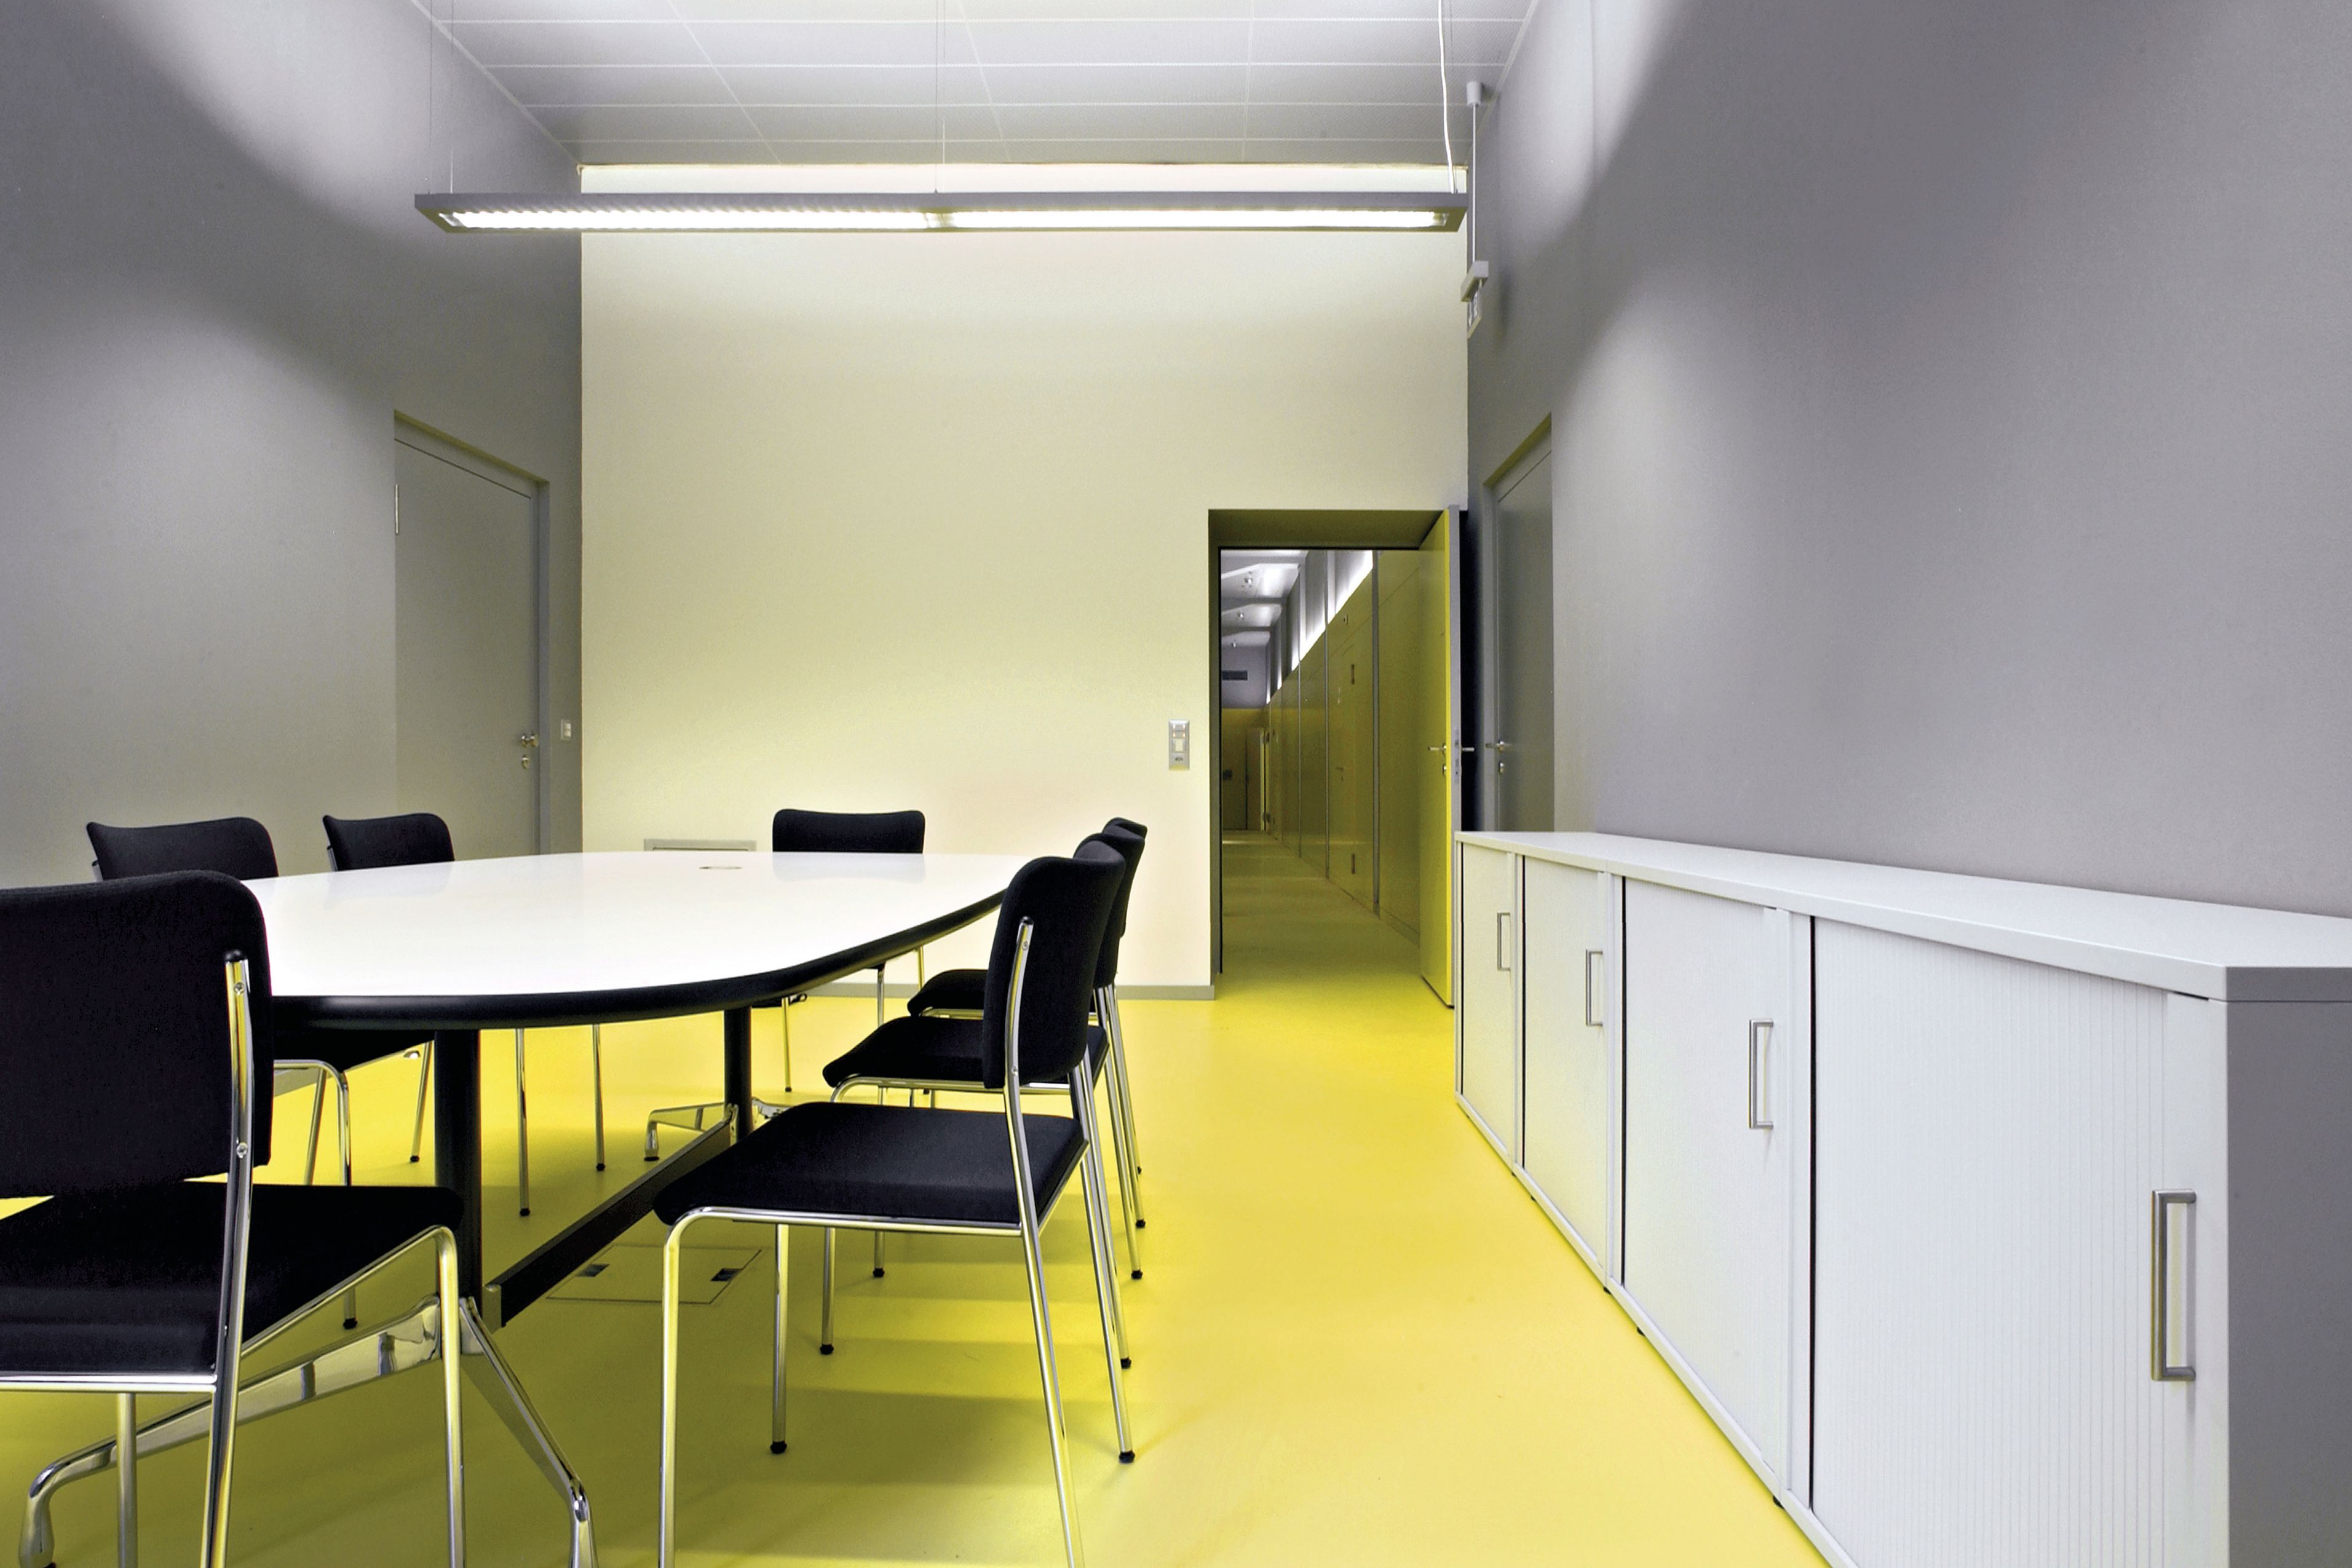 Sika ComfortFloor® yellow floor in office meeting room